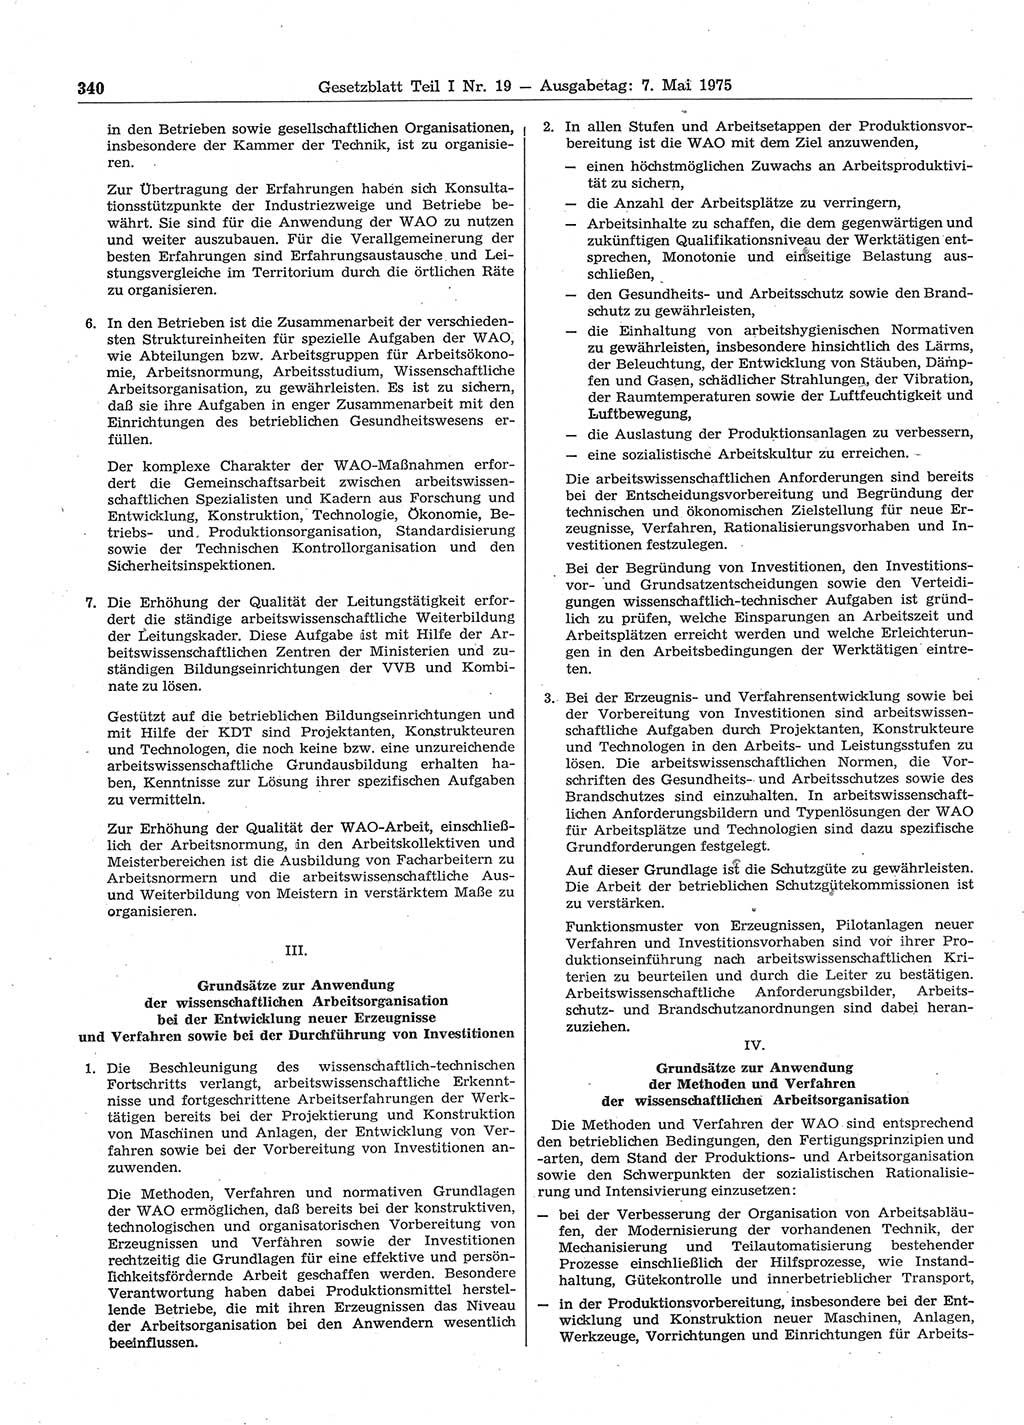 Gesetzblatt (GBl.) der Deutschen Demokratischen Republik (DDR) Teil Ⅰ 1975, Seite 340 (GBl. DDR Ⅰ 1975, S. 340)